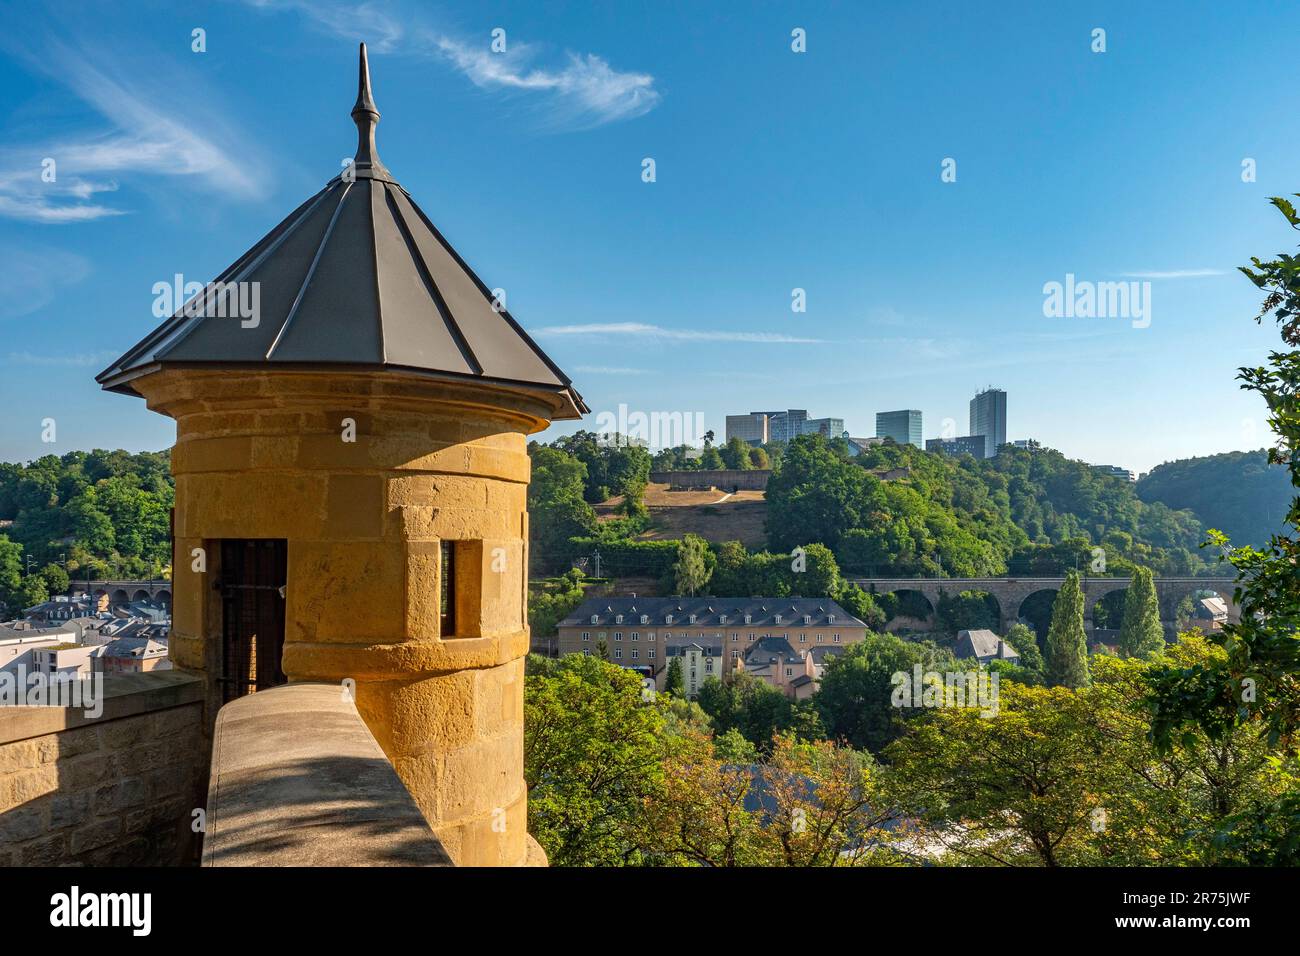 Vue de la vieille ville à Kirchberg, Luxembourg, Benelux, pays du Benelux, Luxembourg Banque D'Images